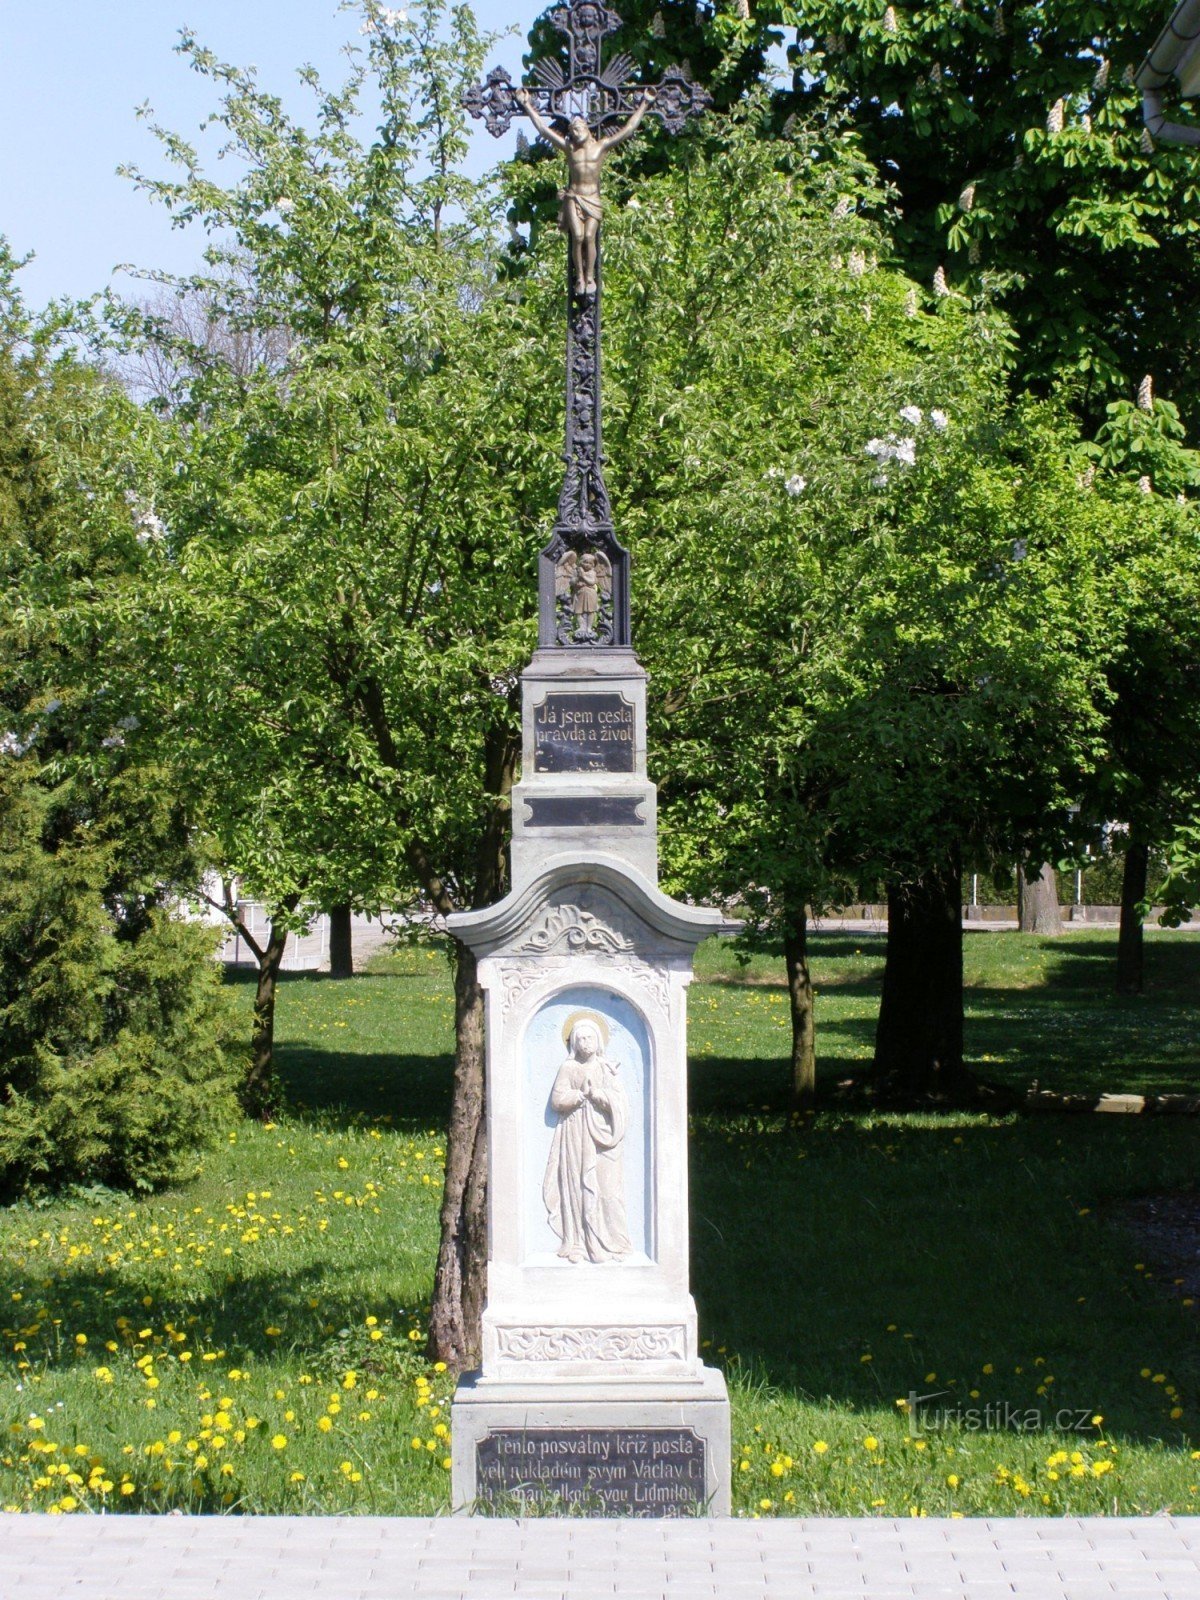 Trnov - nhà nguyện của St. Jana, - một cây thánh giá với tác phẩm điêu khắc của Đức Mẹ Đồng trinh